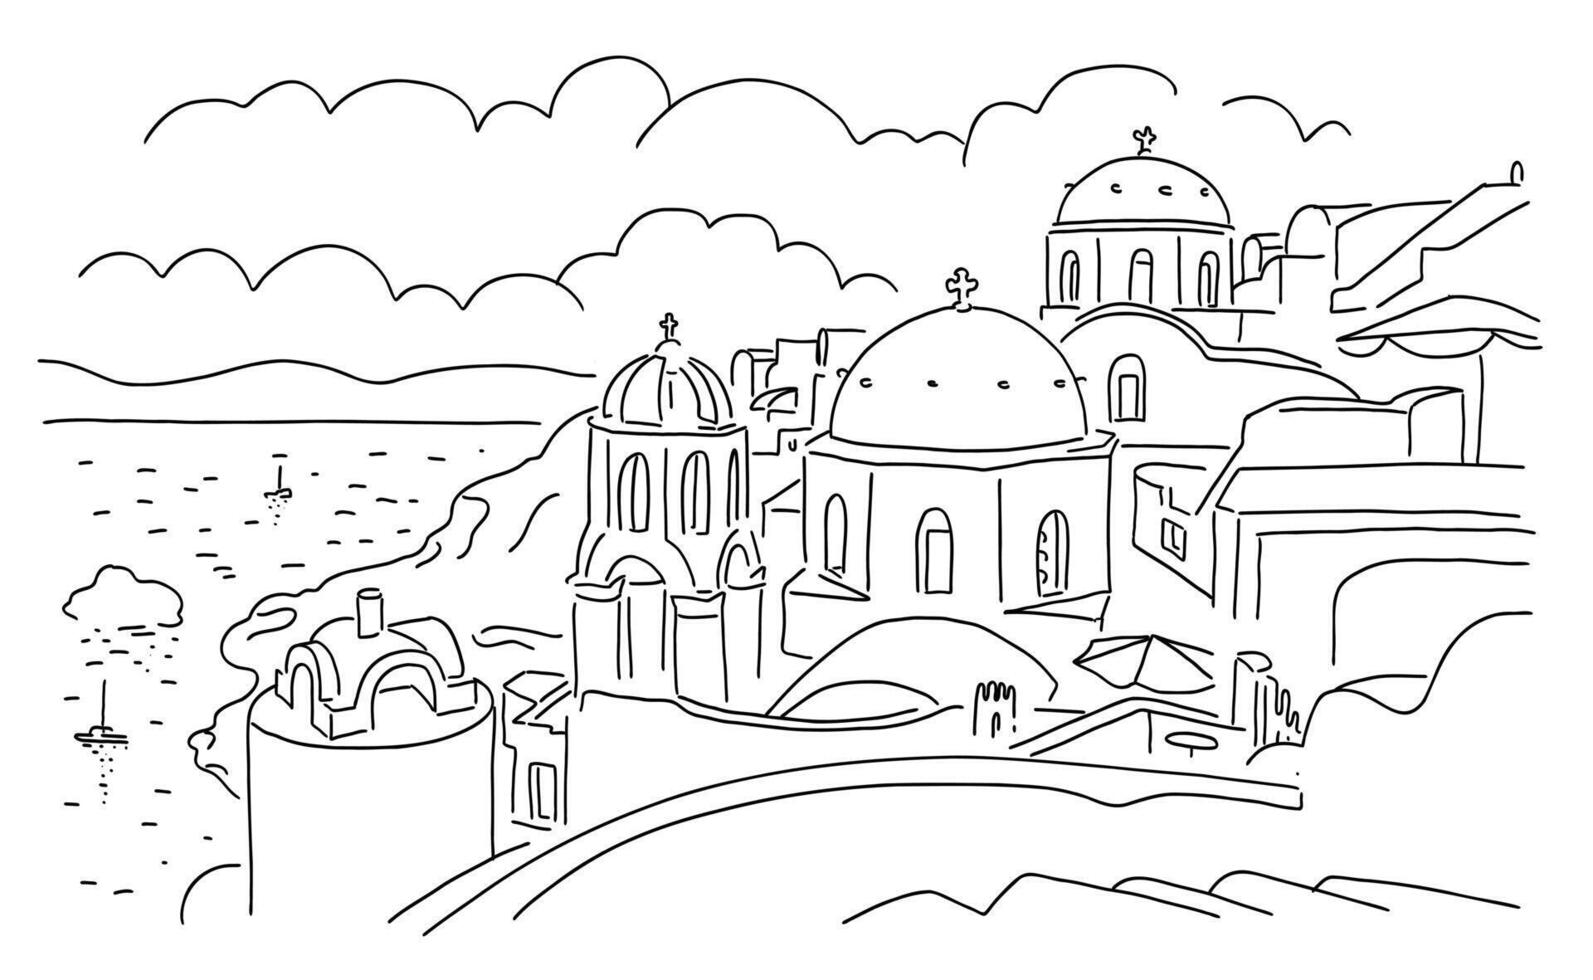 Santorini eiland, Griekenland. mooi traditioneel wit architectuur en Grieks orthodox kerken met blauw koepels over- de caldera, Egeïsch zee. lineair hoofd illustratie vector